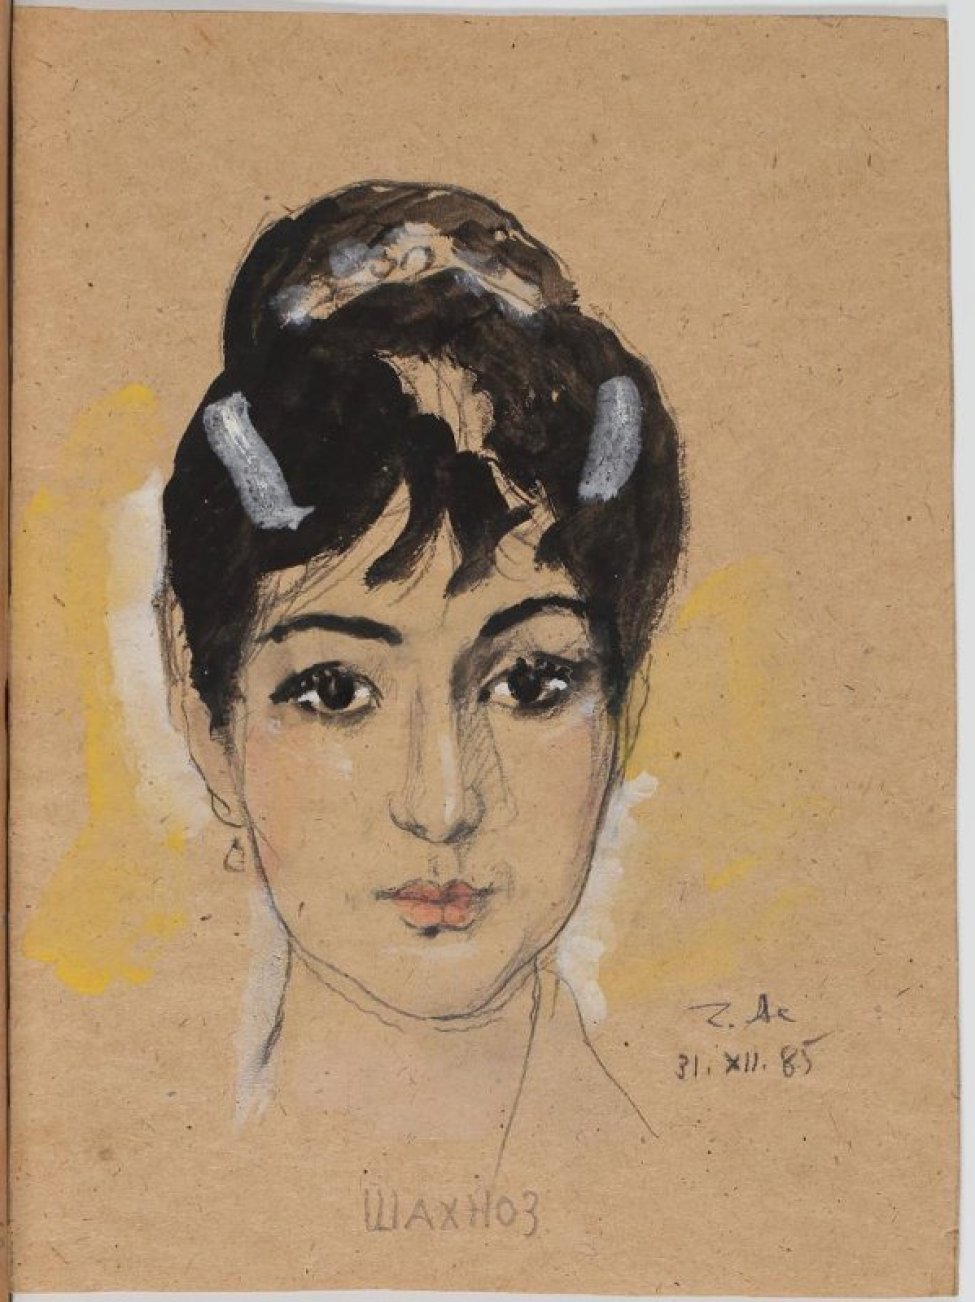 Оплечное изображение в фас черноволосой молодой женщины с высокой прической; взгляд темных глаз направлен на зрителя, розовые губы плотно сжаты.